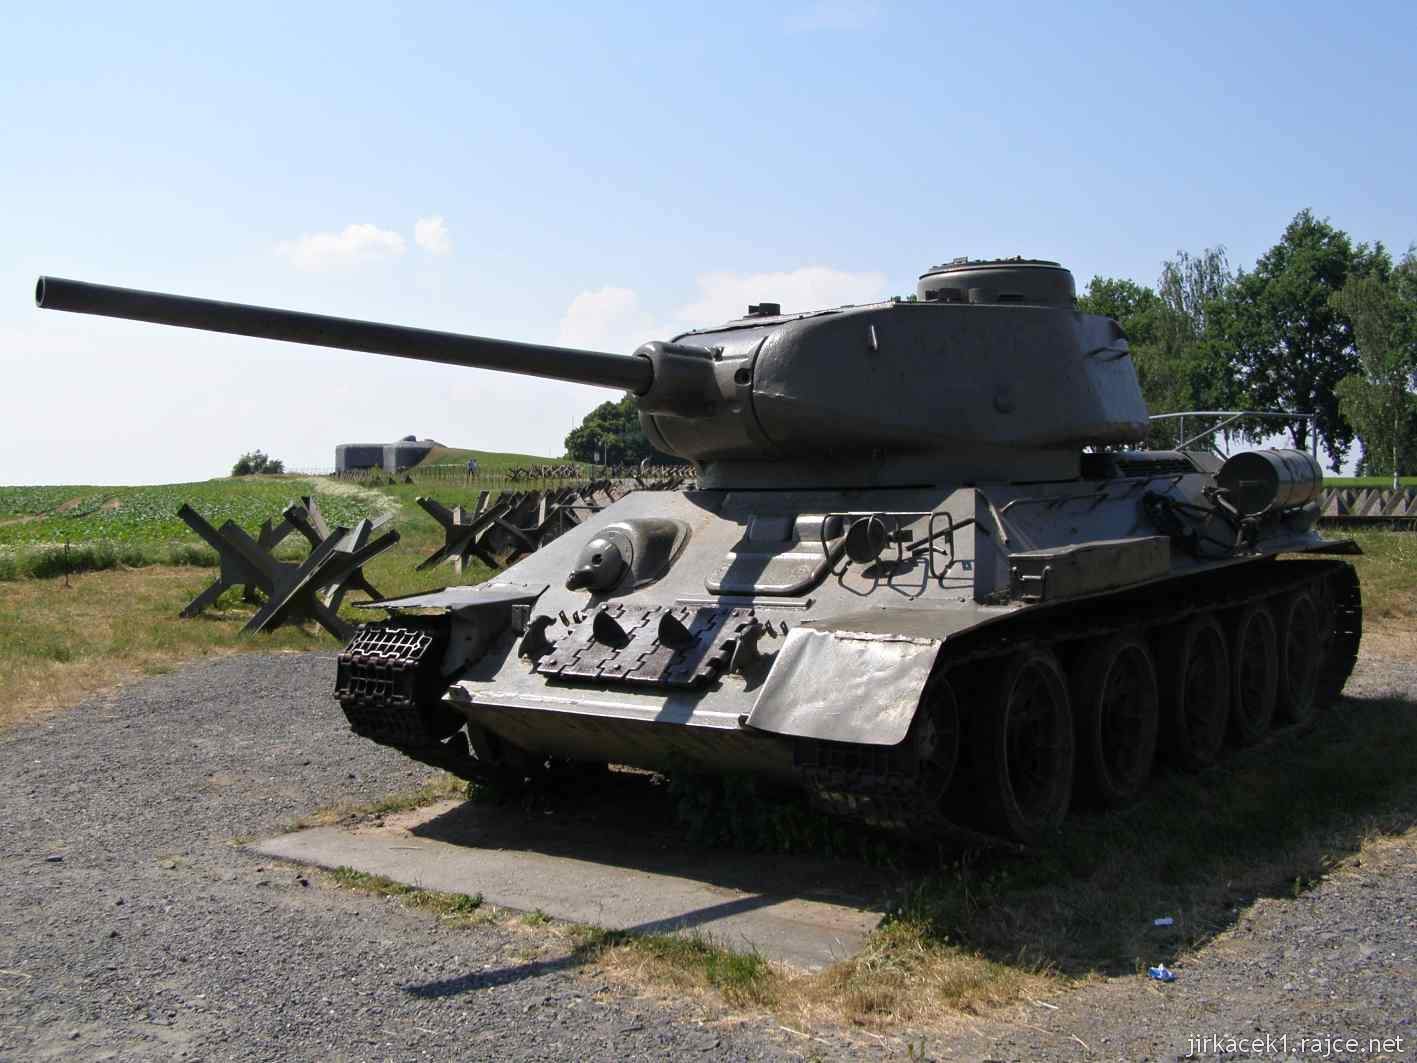 Darkovičky - s. opevnění MO-S 19 Alej 13 - druhý ze tří tanků T-34-85 u bunkru